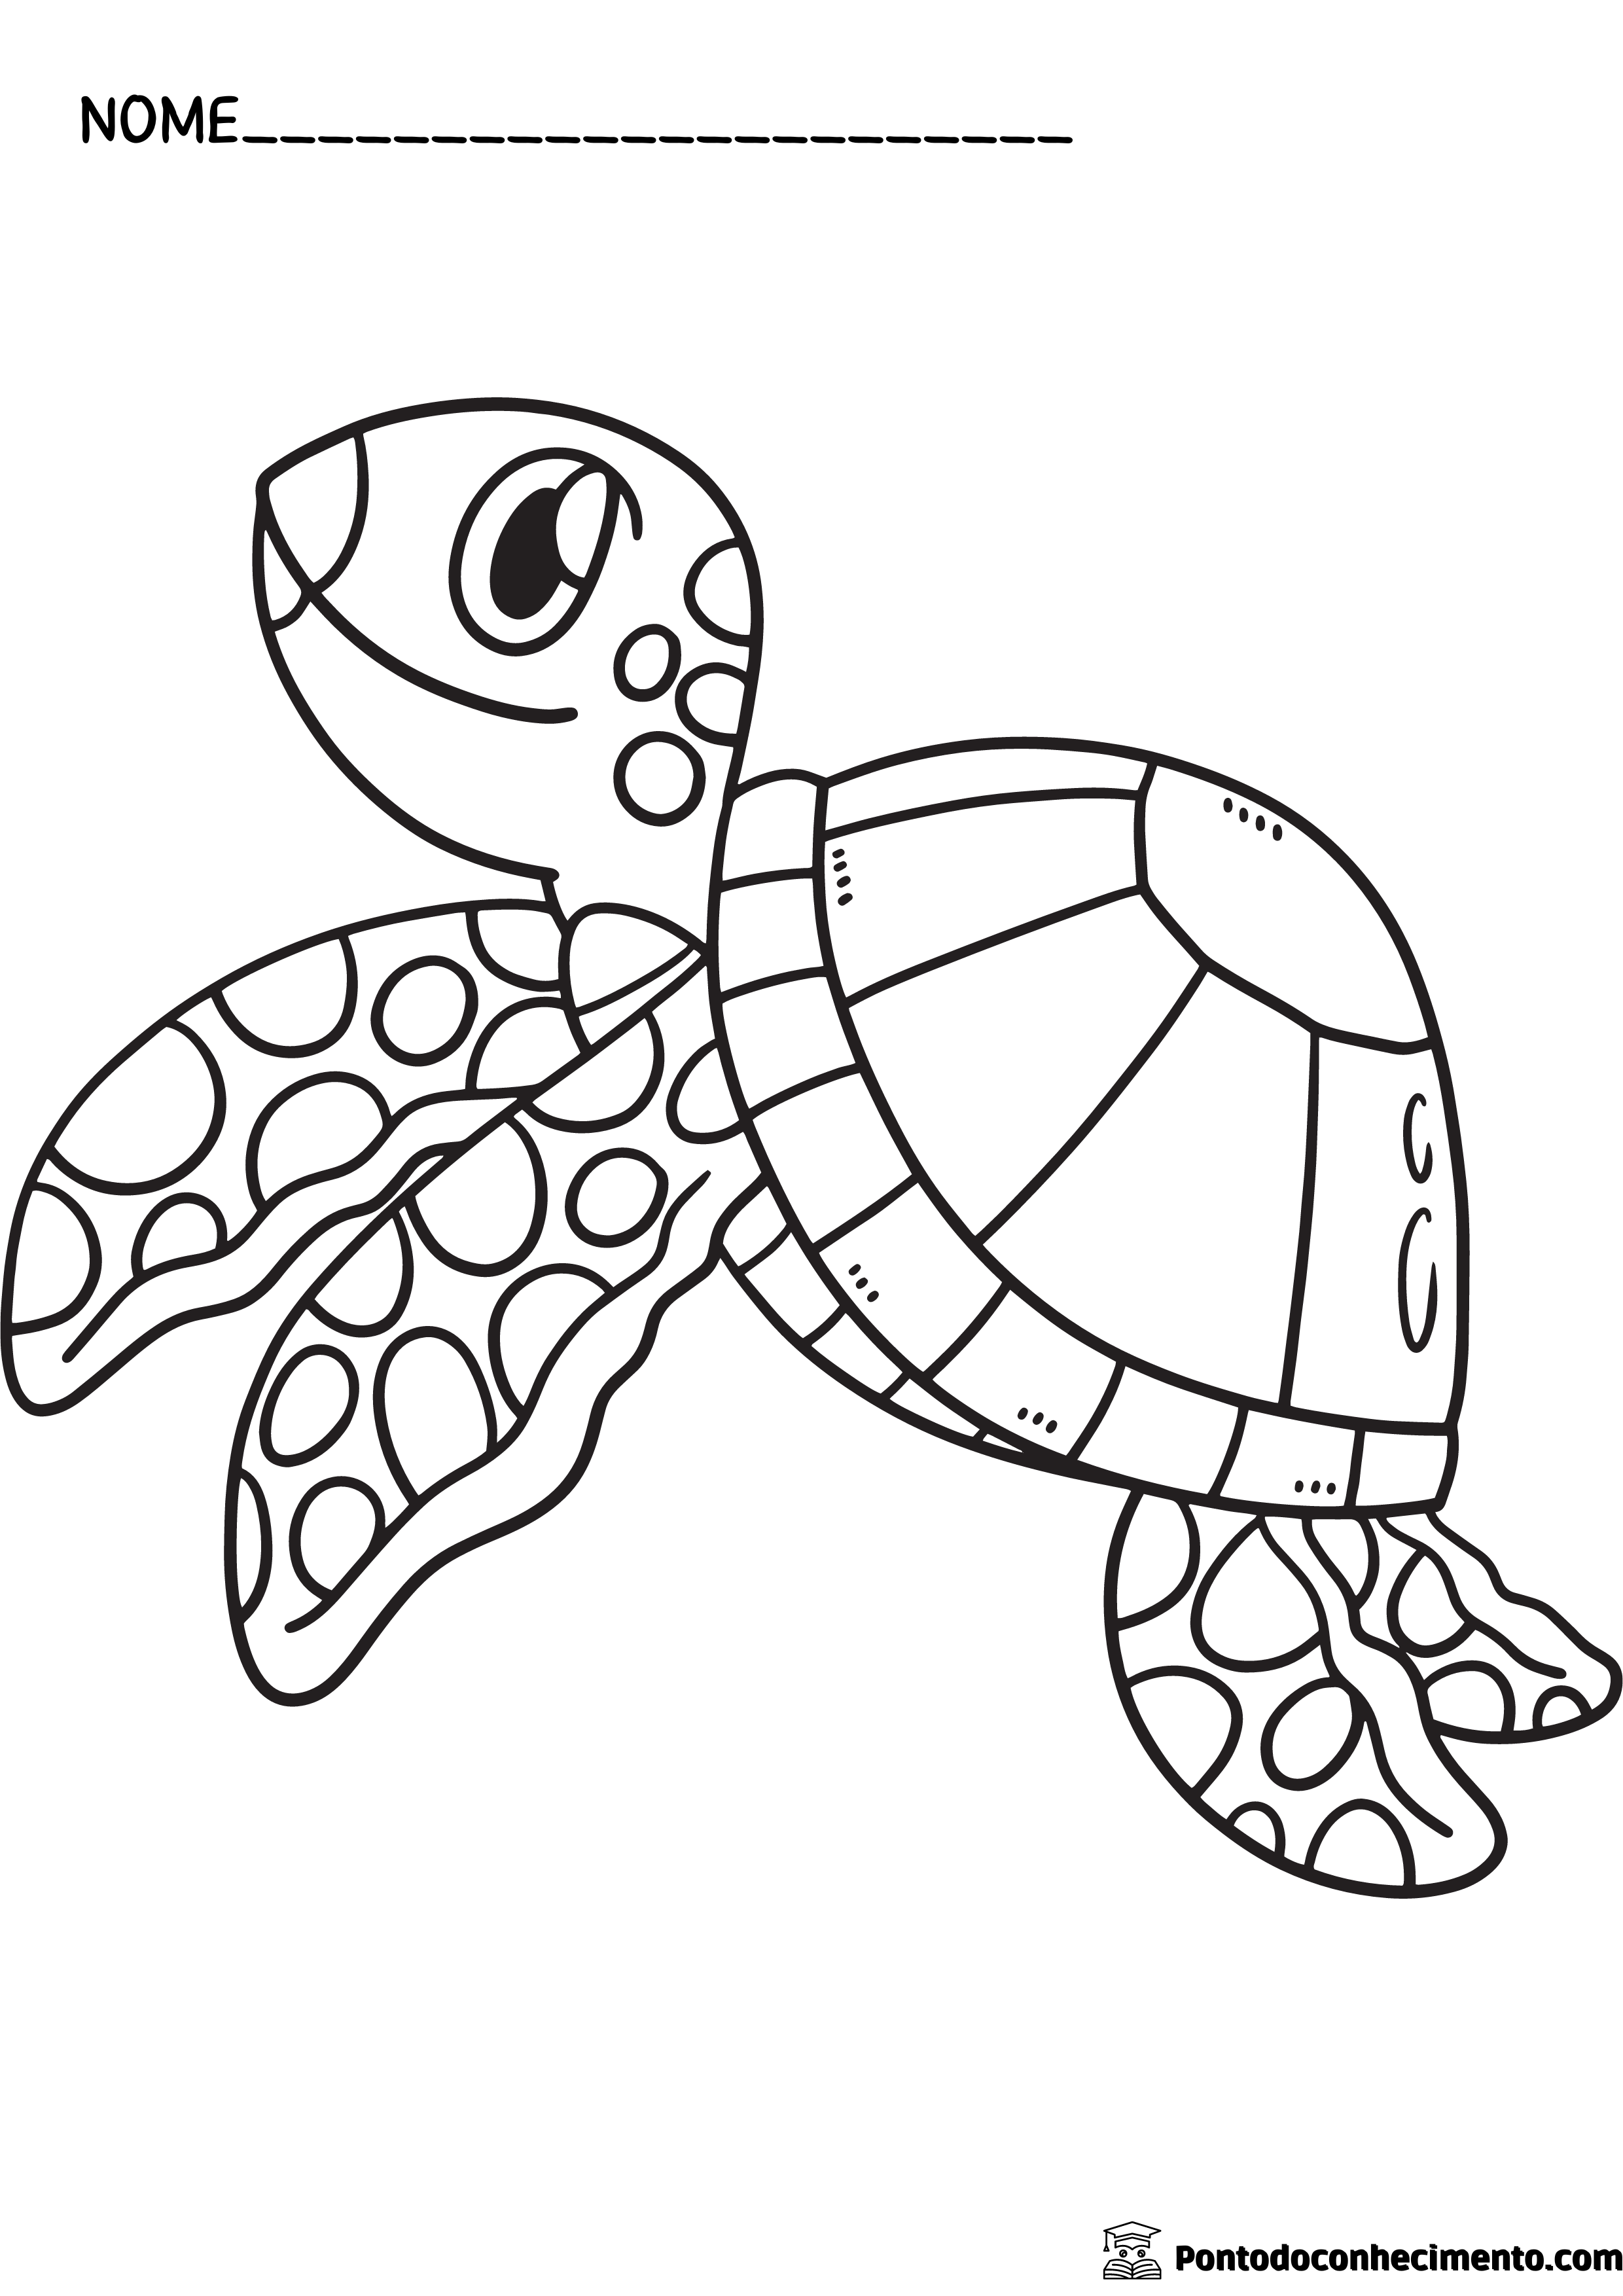 tartaruga: Desenhos infantis para colorir